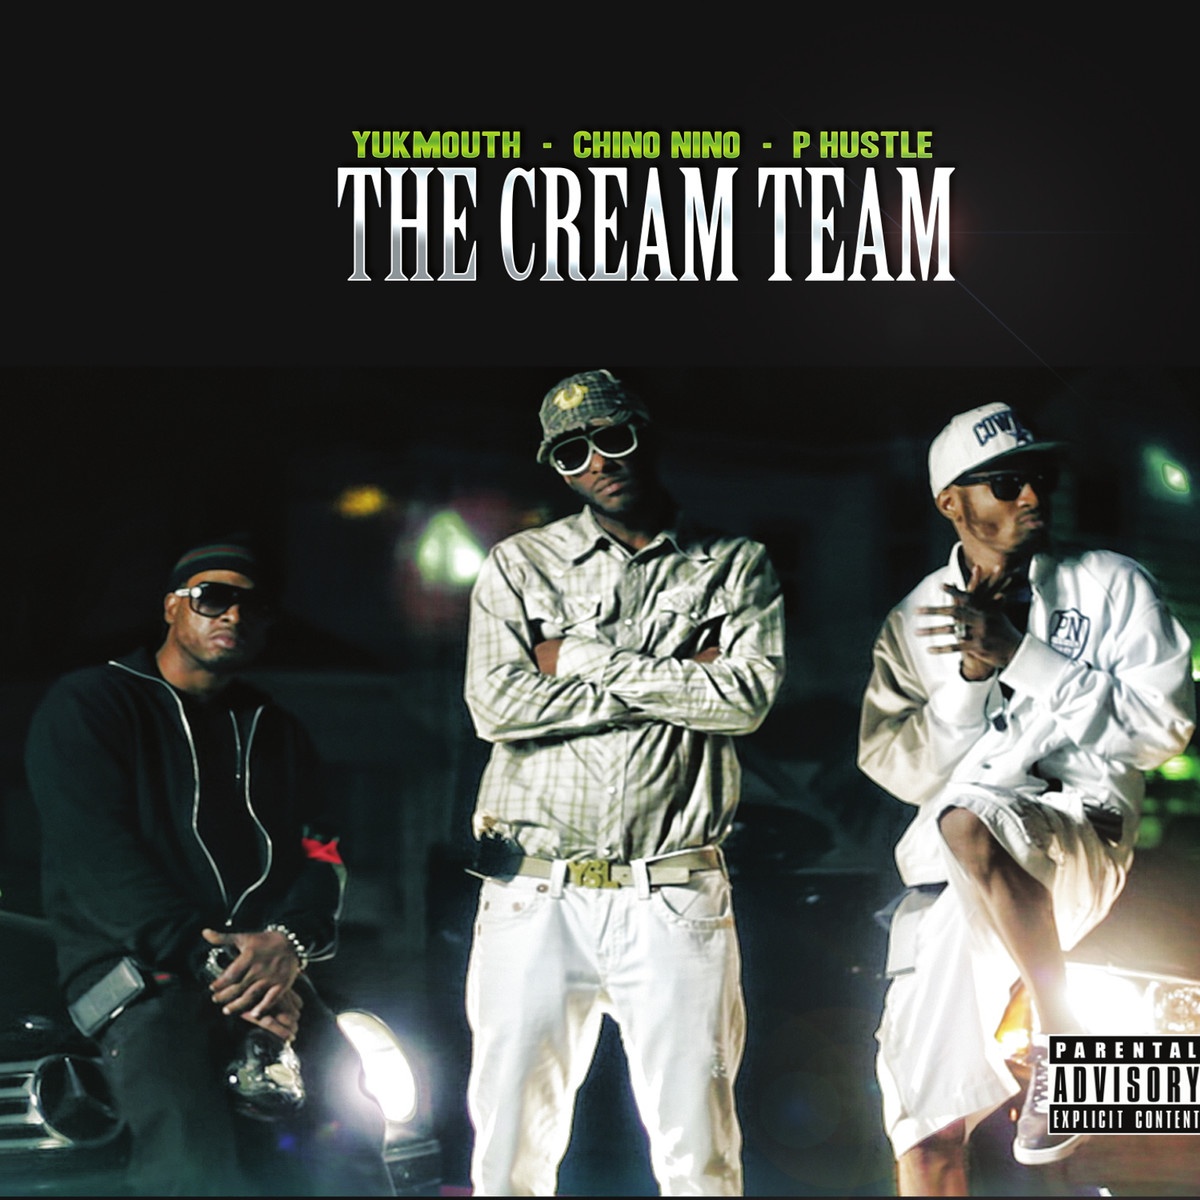 The Cream Team